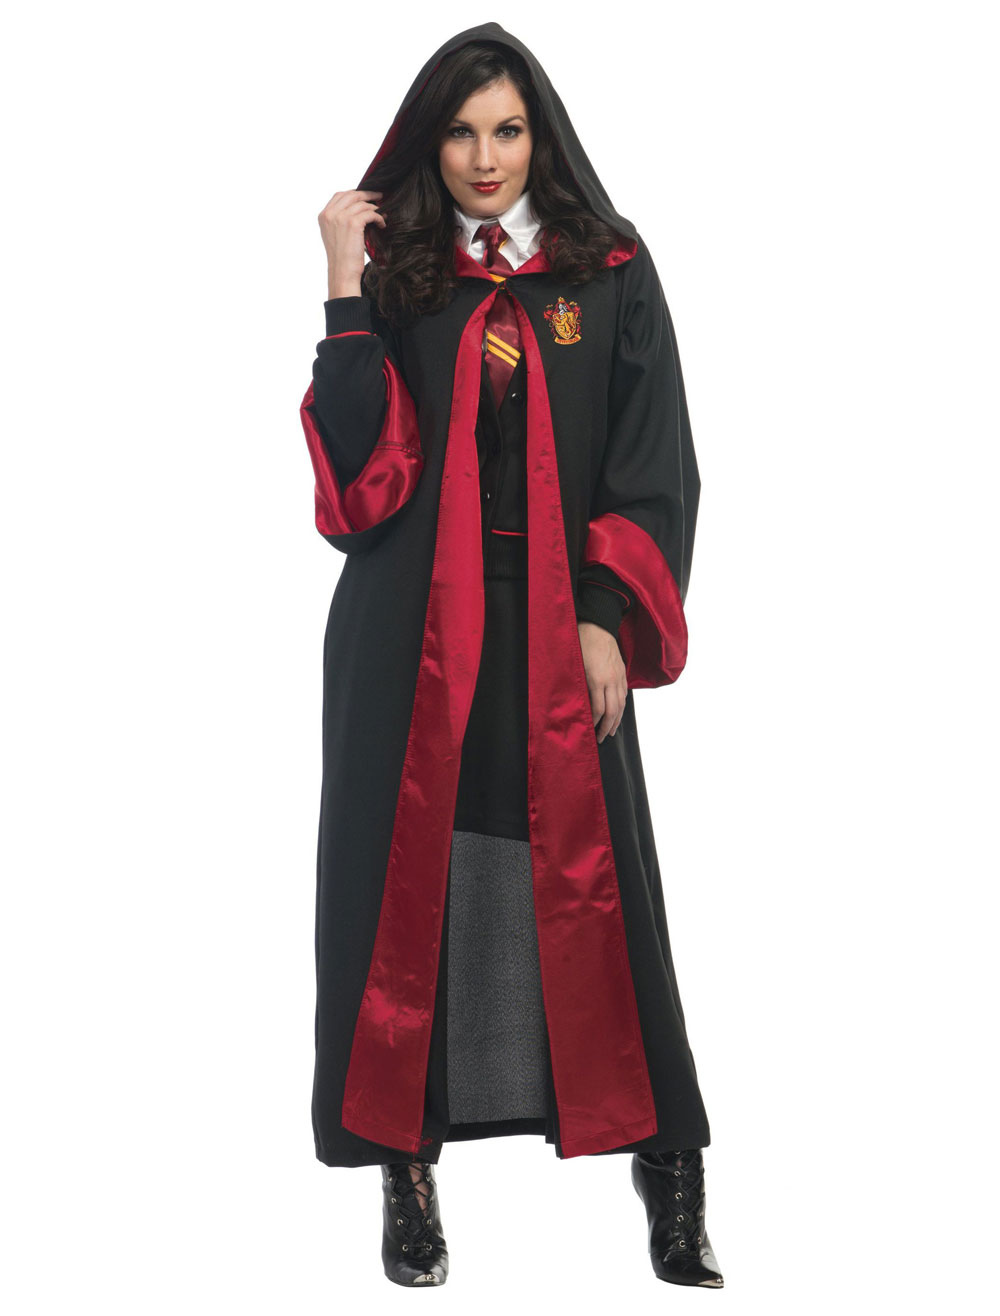 Específico Abuso Política Disfraz de Harry Potter para mujer, Túnica de Gryffindor, uniforme y  corbata, Halloween - Cosplayshow.com